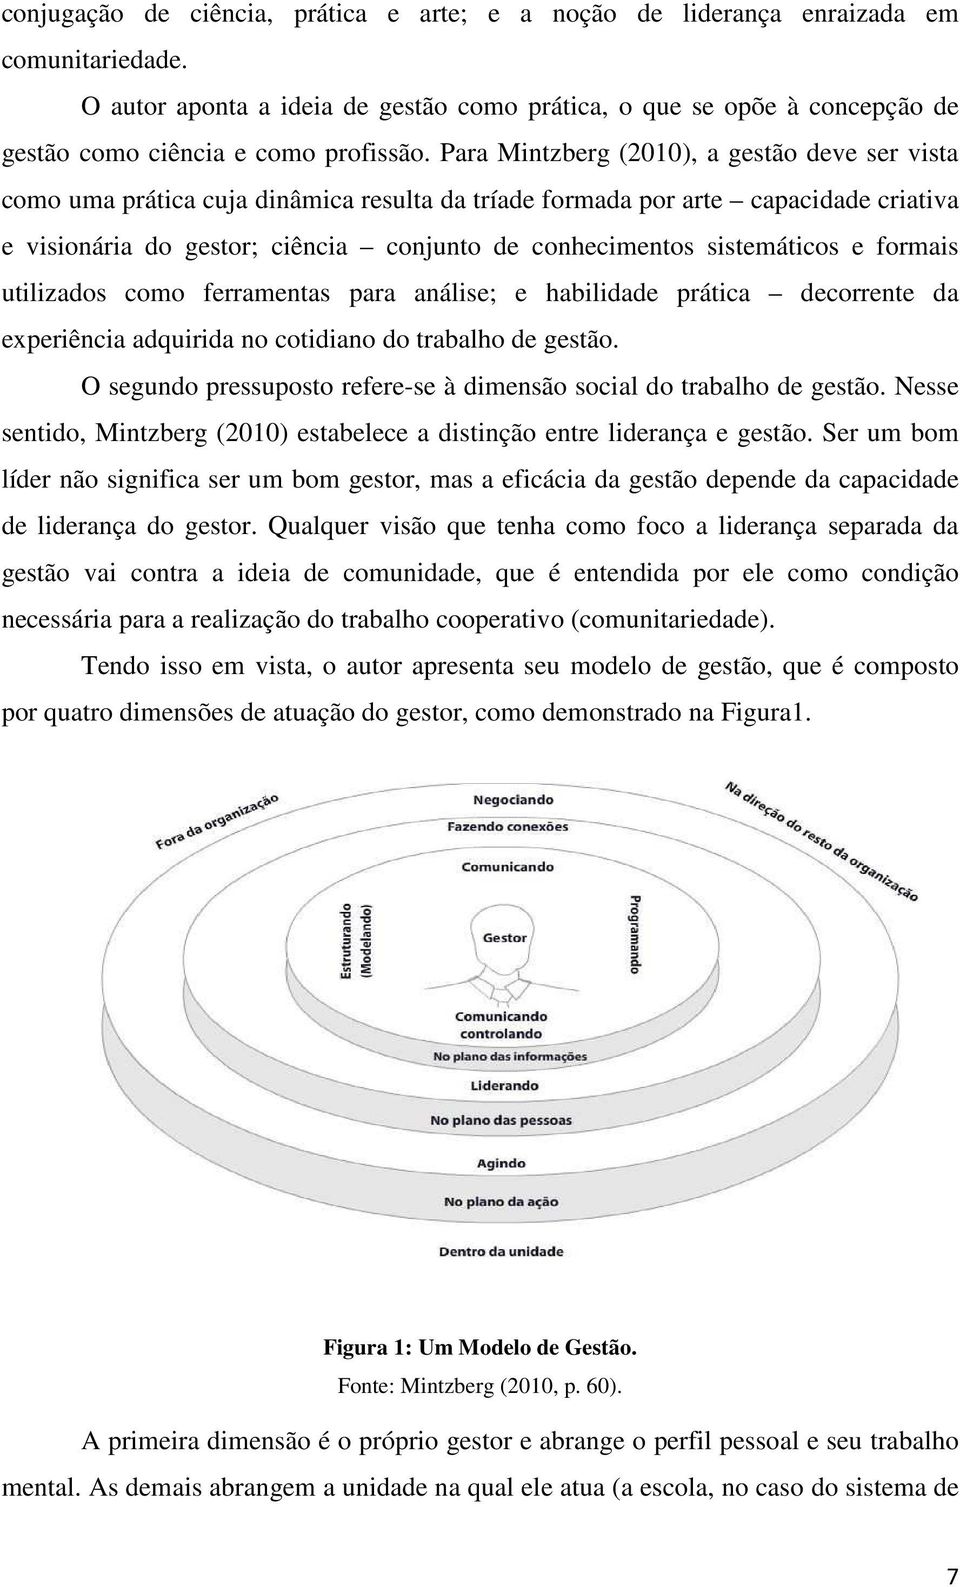 Para Mintzberg (2010), a gestão deve ser vista como uma prática cuja dinâmica resulta da tríade formada por arte capacidade criativa e visionária do gestor; ciência conjunto de conhecimentos